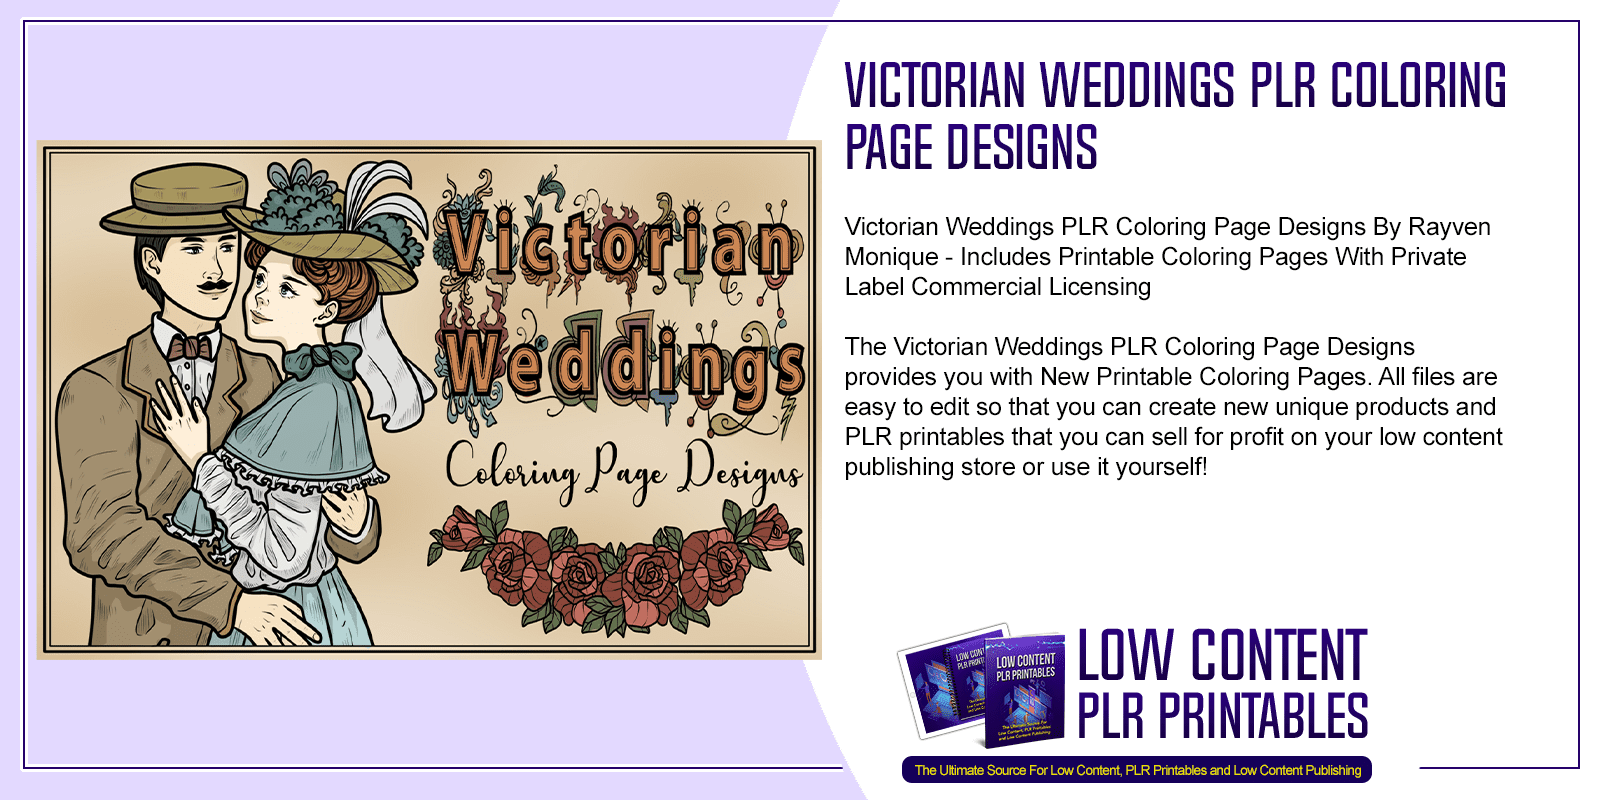 Victorian Weddings PLR Coloring Page Designs